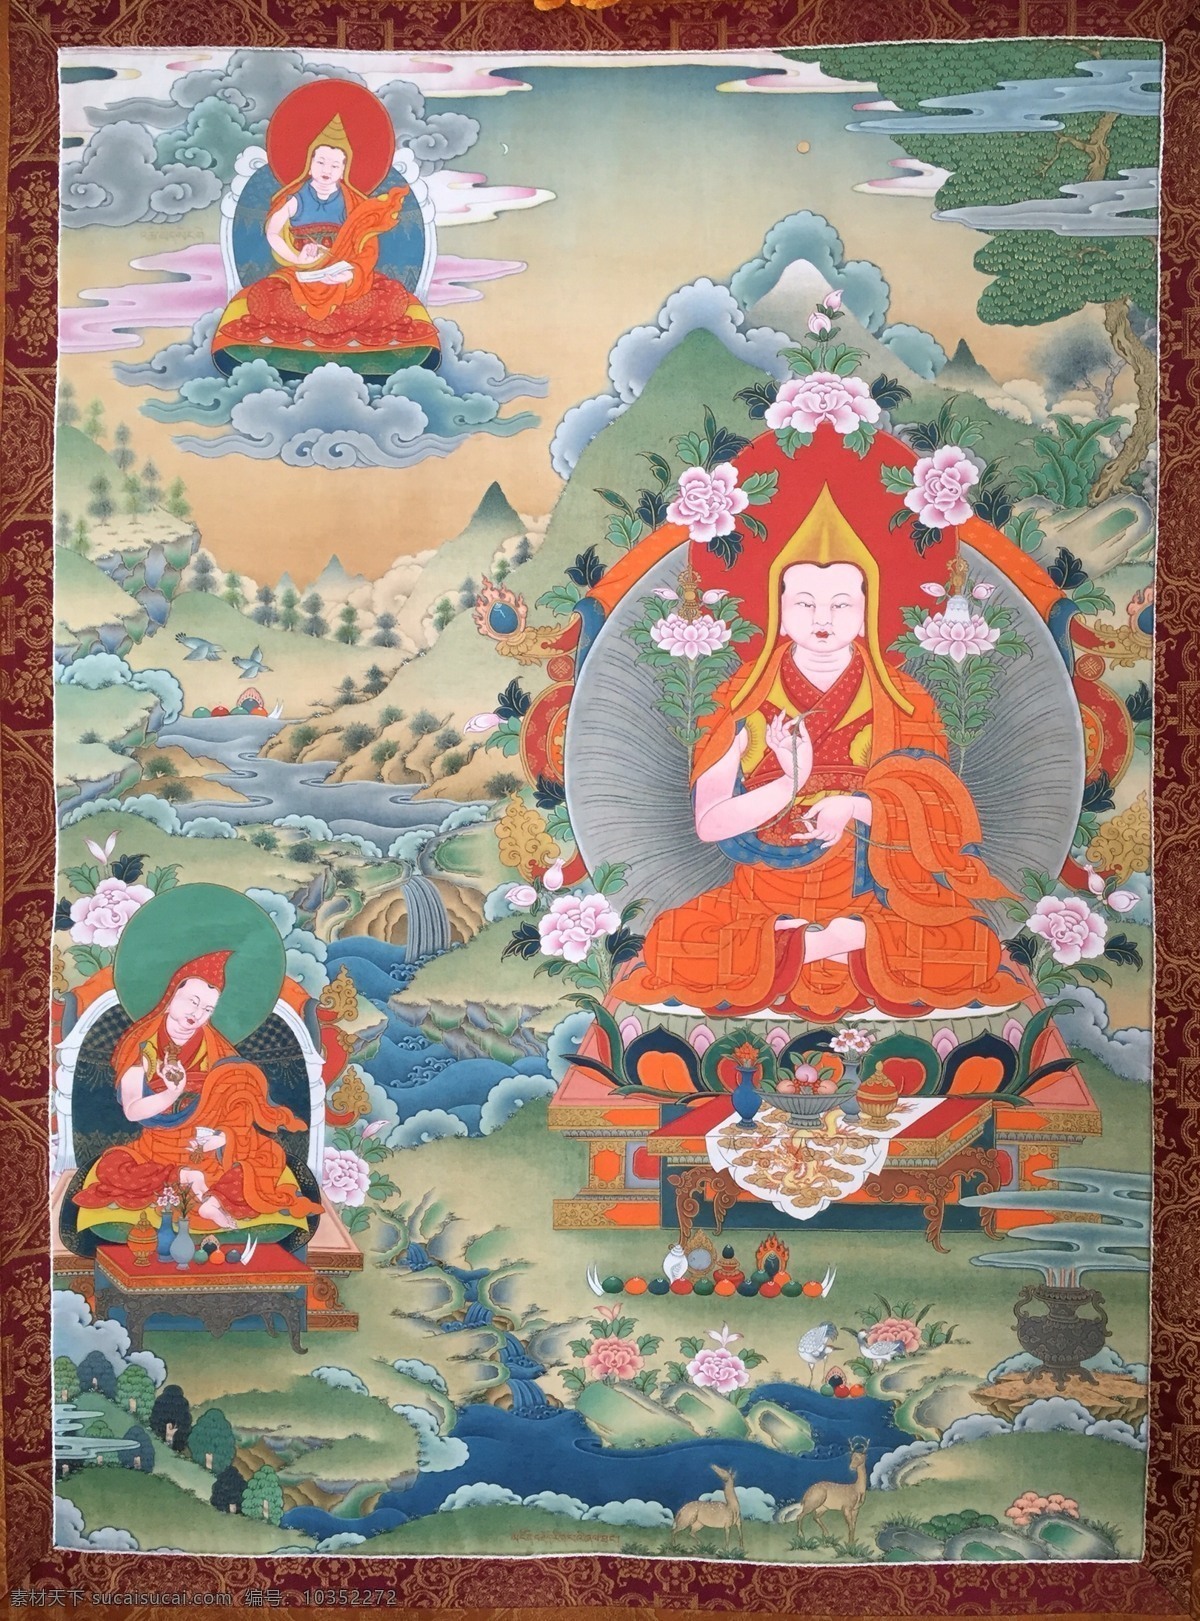 唐卡 佛教 宗教 藏传佛教 宗喀巴 西藏 西藏旅游 西藏印象 藏文化